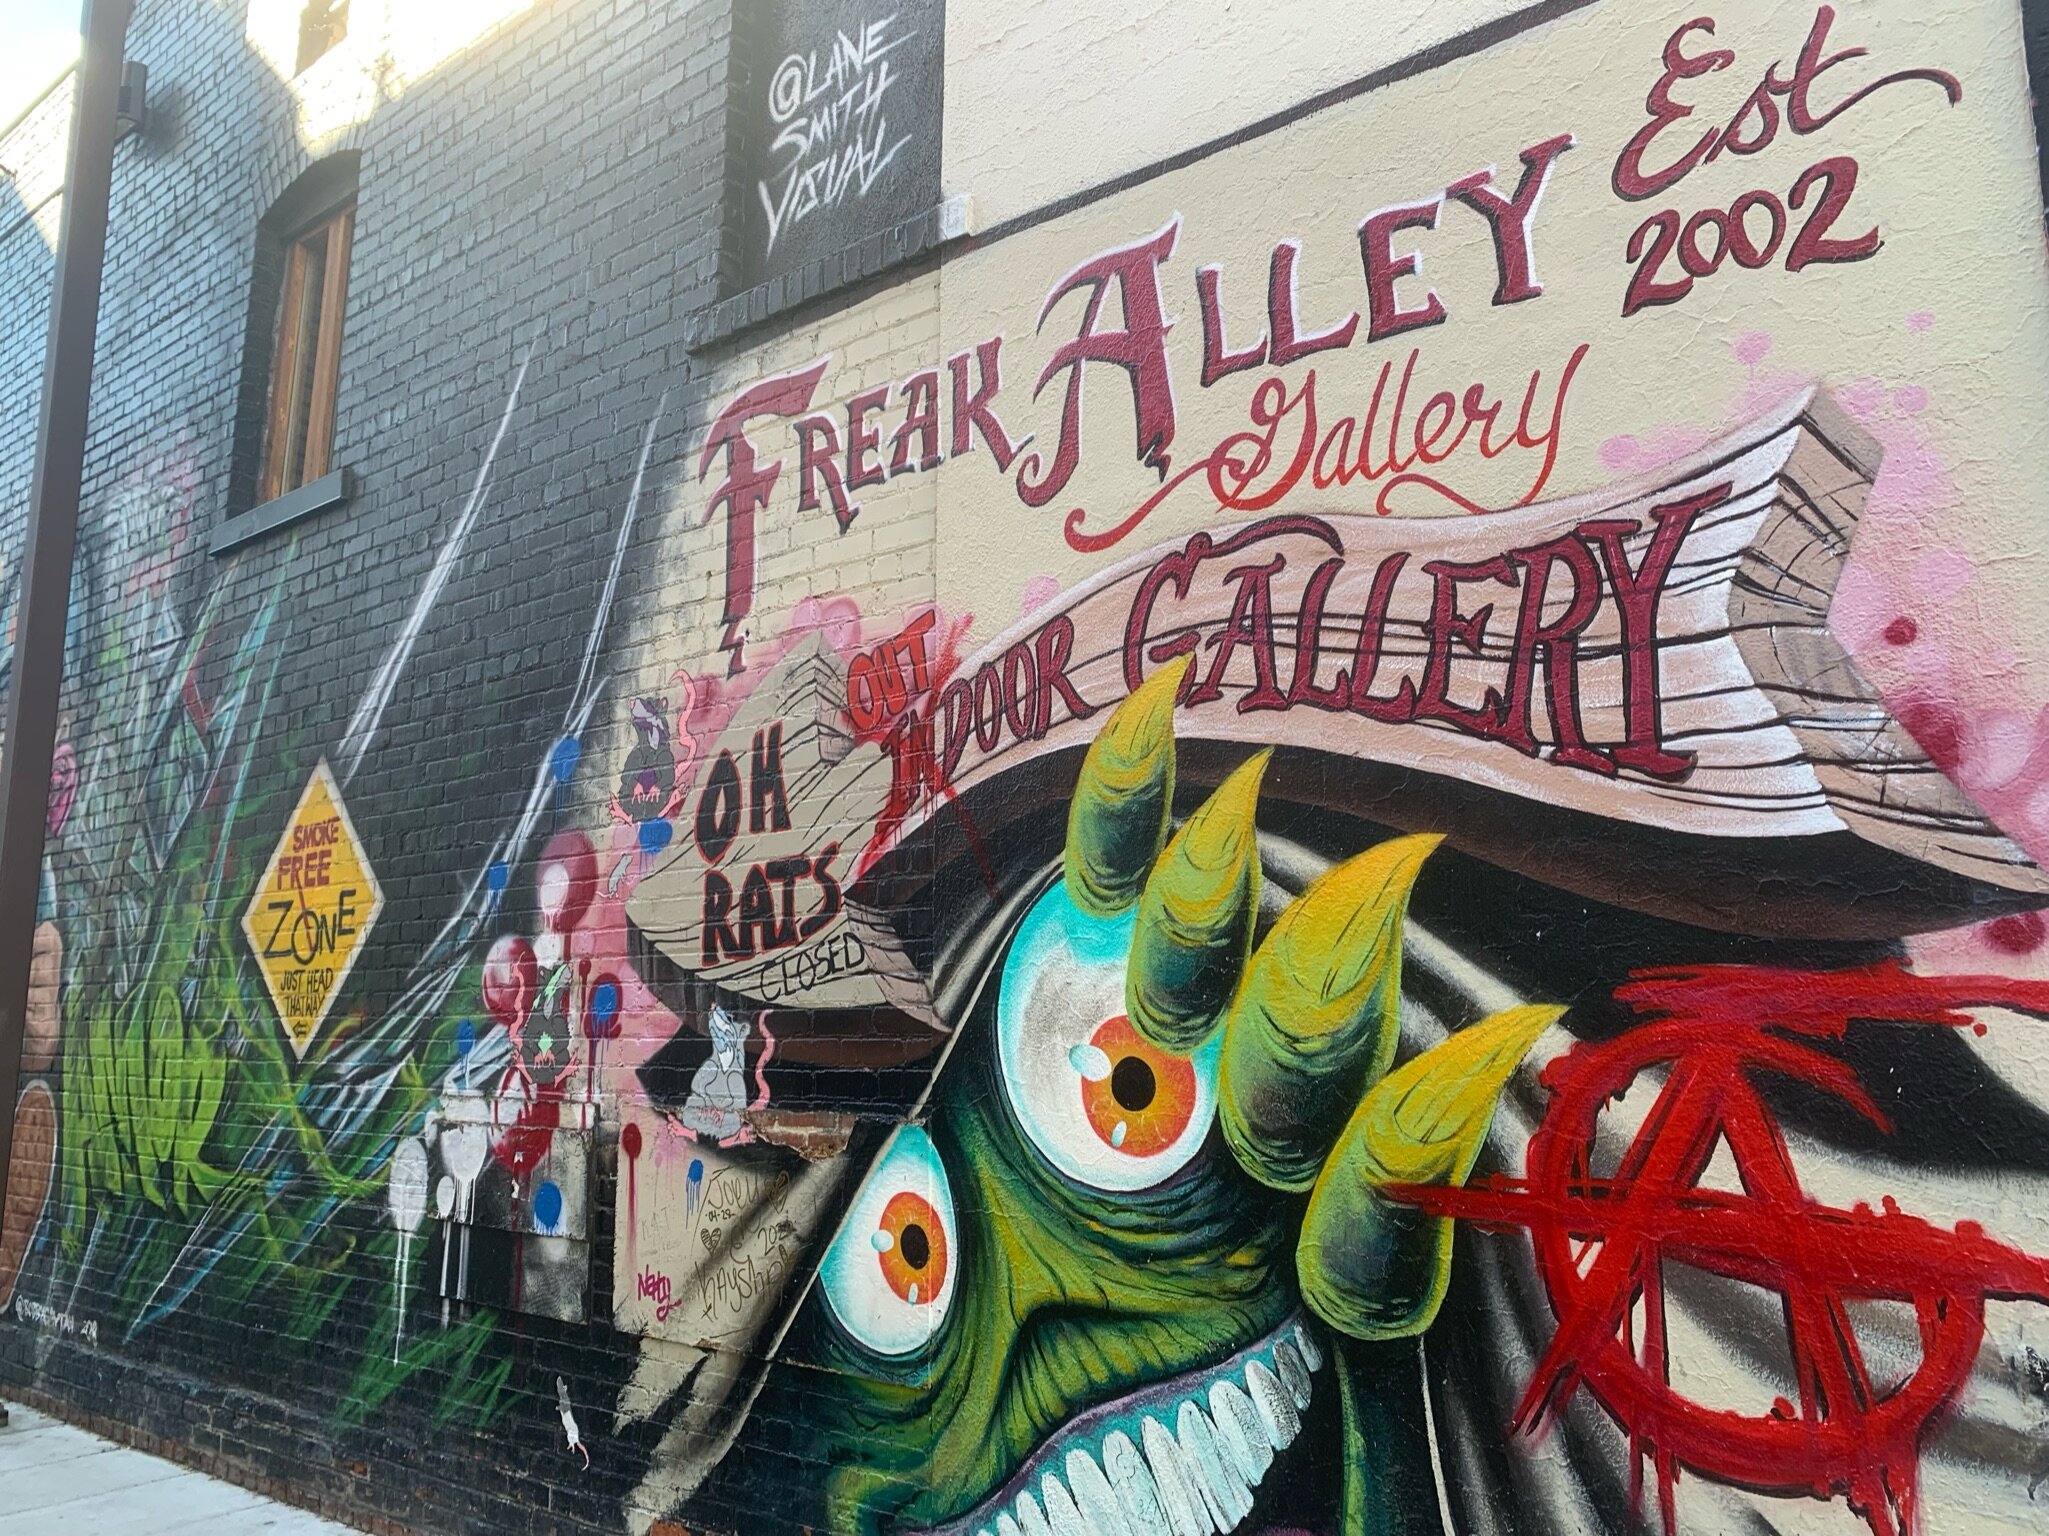 Photo of street art in Freak Alley in Boise, Idaho.